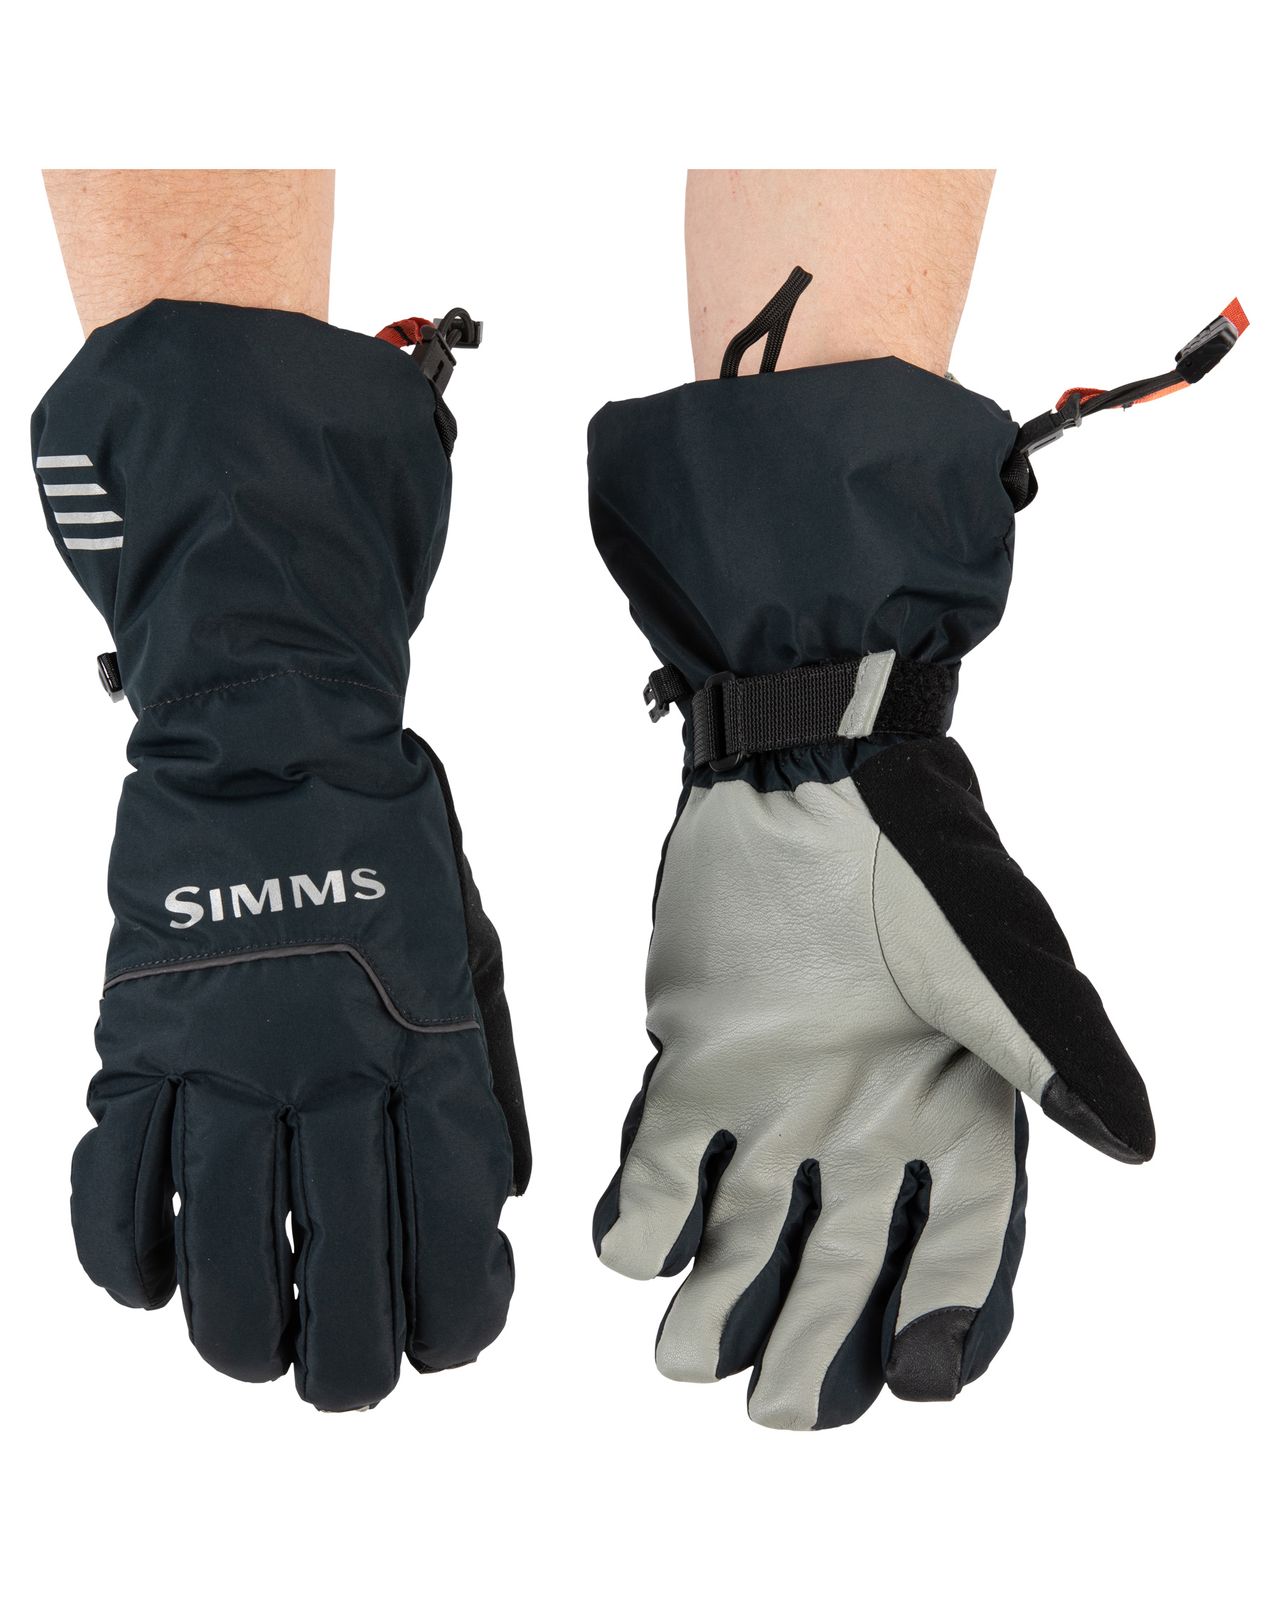 Simms Insulated Glove Black - Handsker - fluer.dk